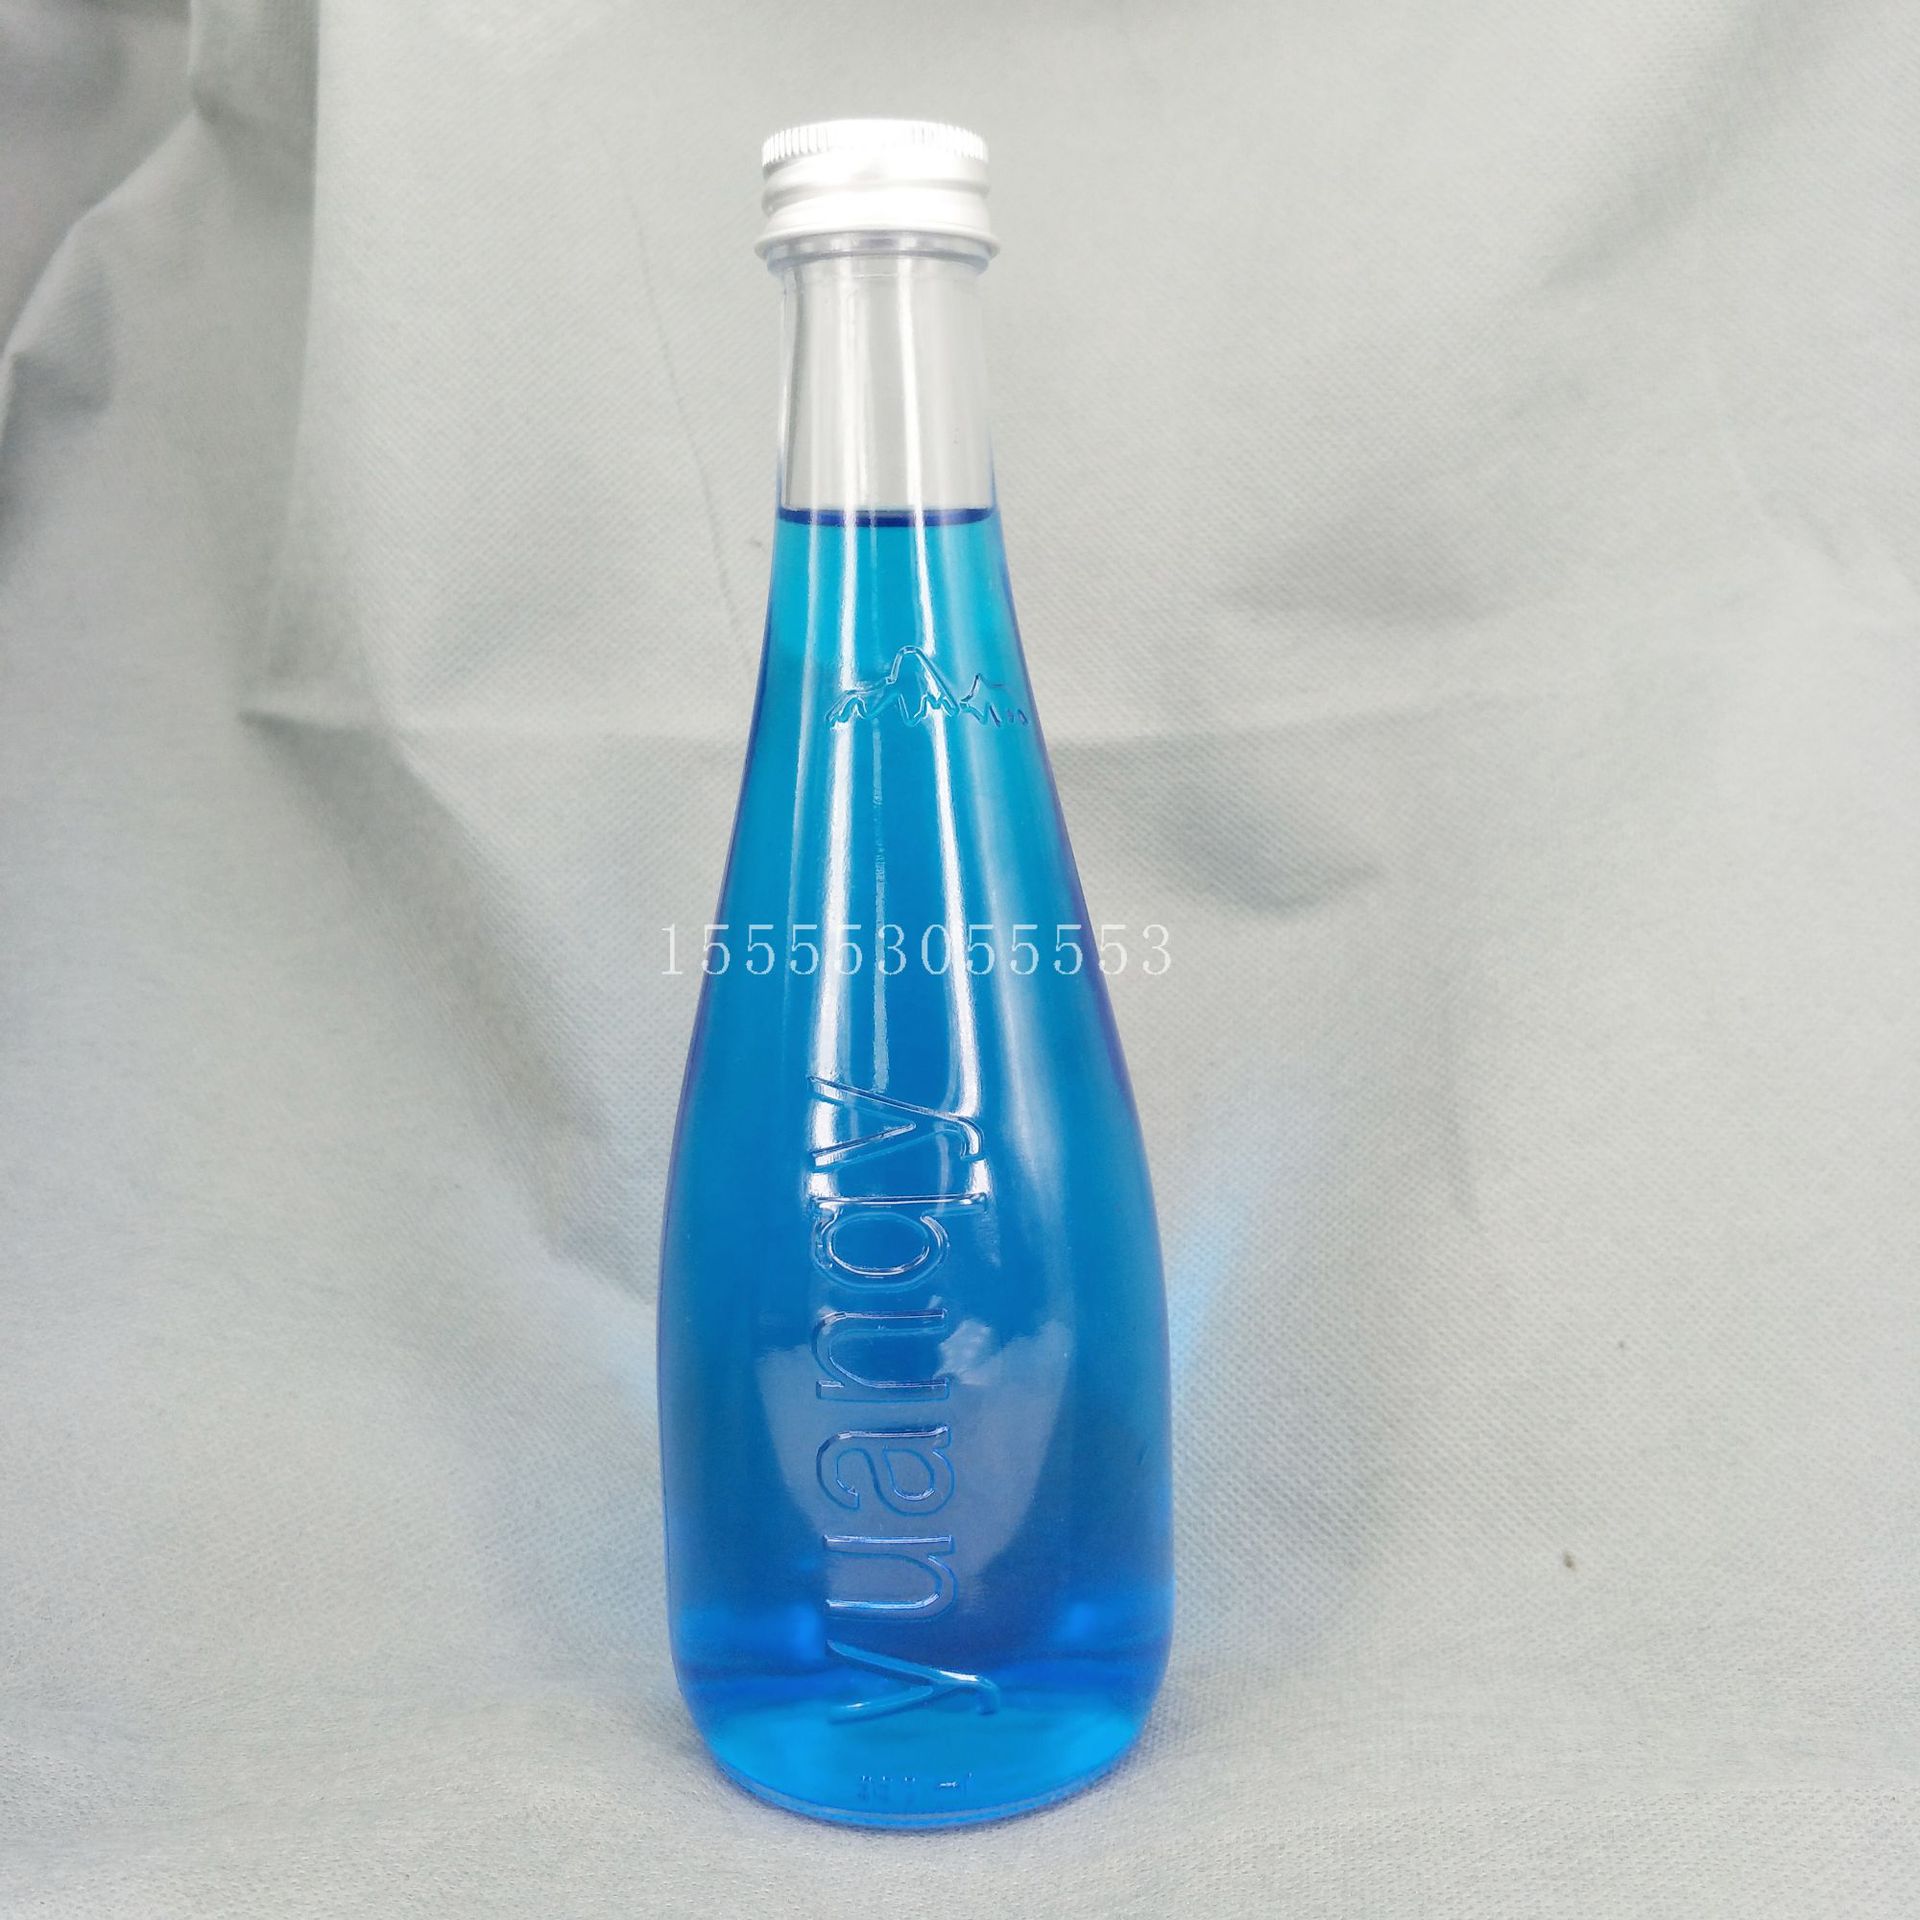 高档晶白料 275ml 依云矿泉水玻璃瓶   饮料  果汁玻璃瓶 250ml示例图5